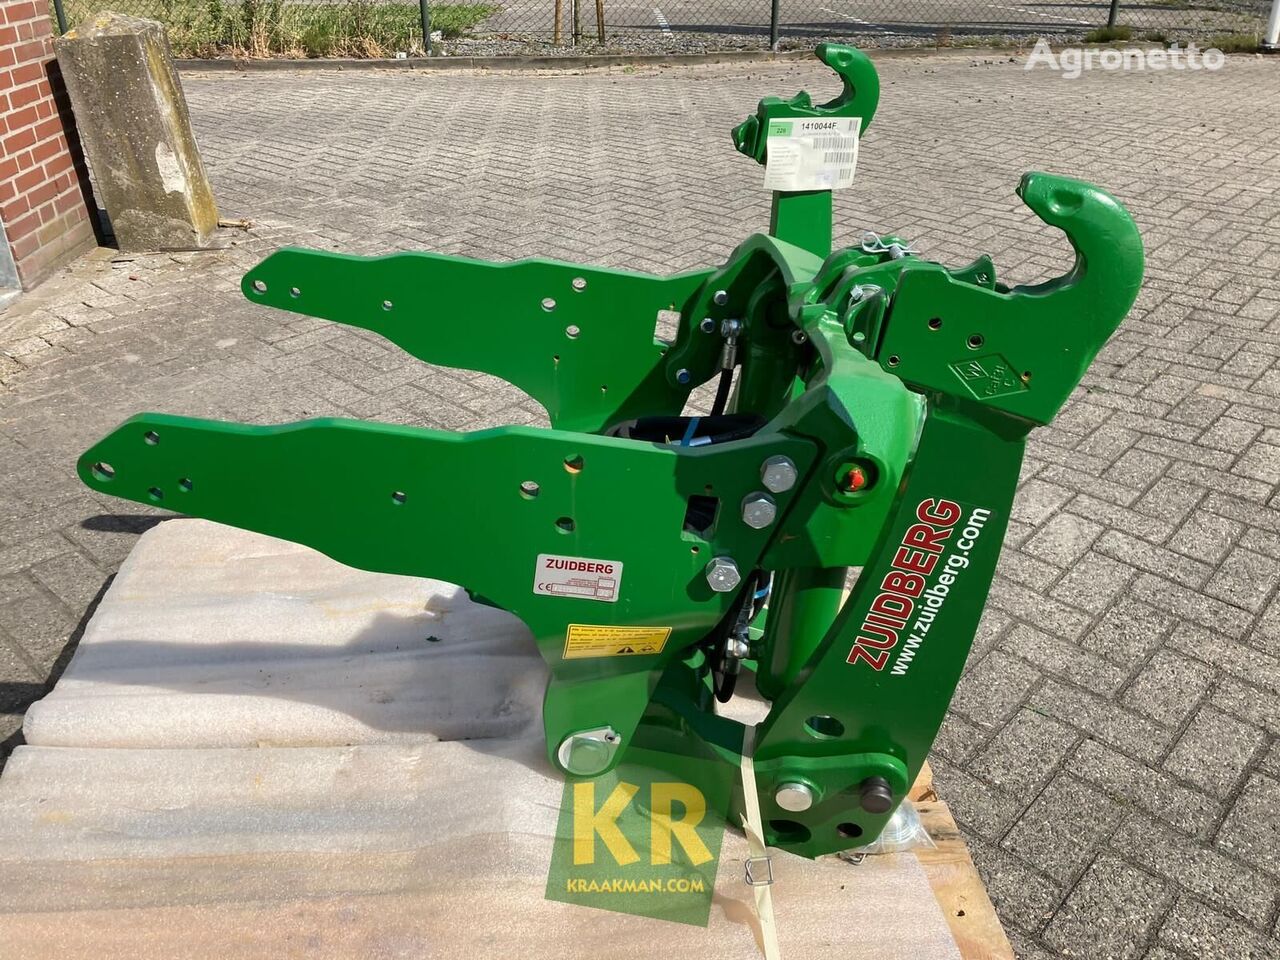 Zuidberg 32KN quick coupler for John Deere 7030 wheel tractor